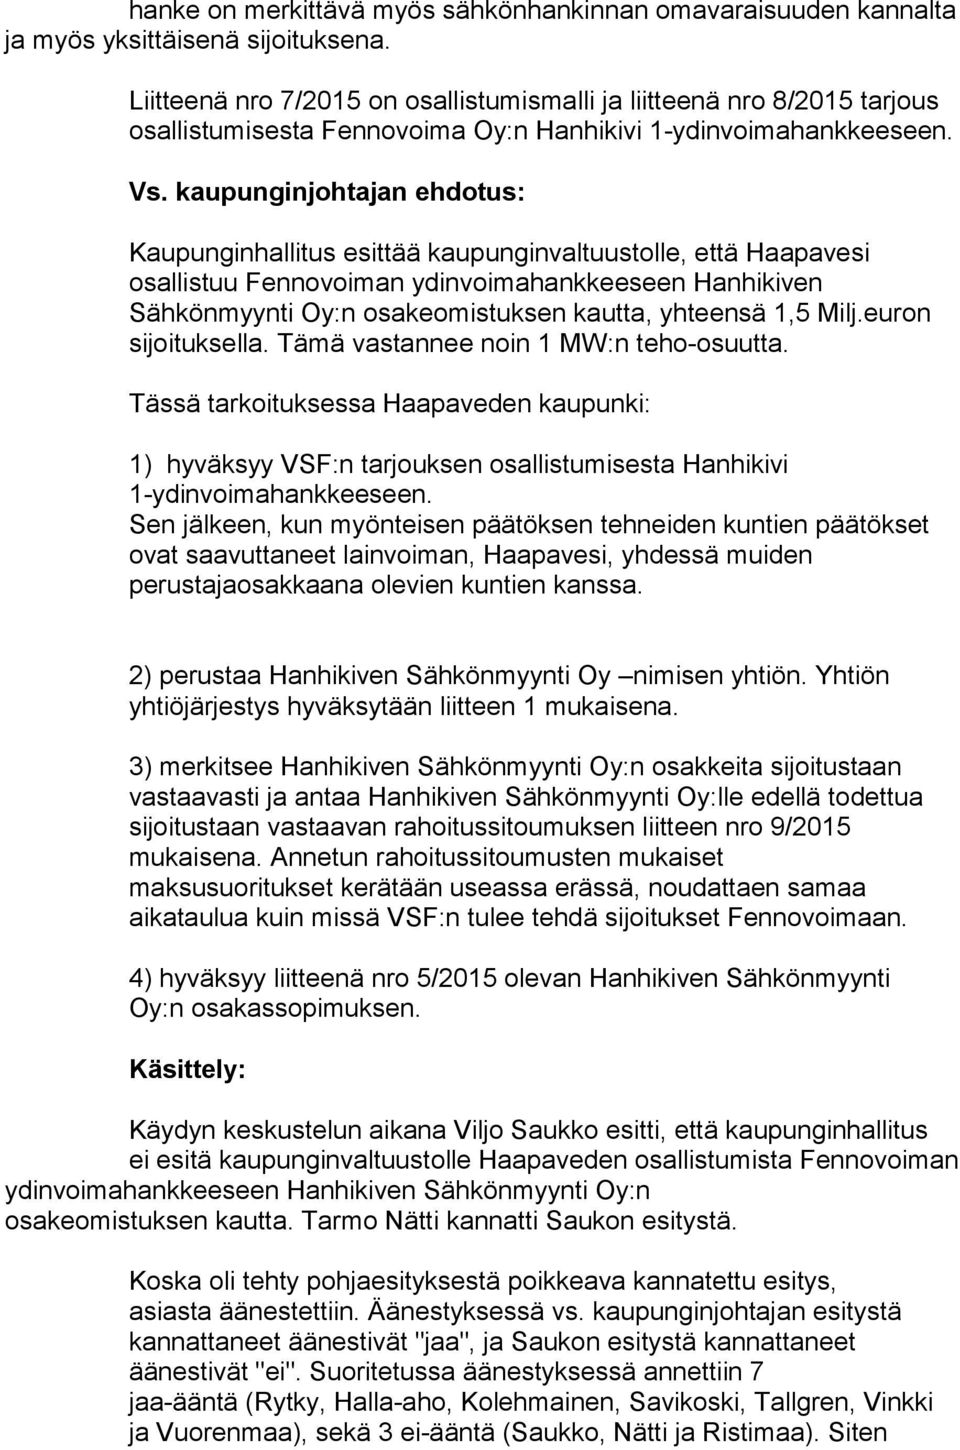 kaupunginjohtajan ehdotus: Kaupunginhallitus esittää kaupunginvaltuustolle, että Haapavesi osallistuu Fennovoiman ydinvoimahankkeeseen Hanhikiven Sähkönmyynti Oy:n osakeomistuksen kautta, yhteensä